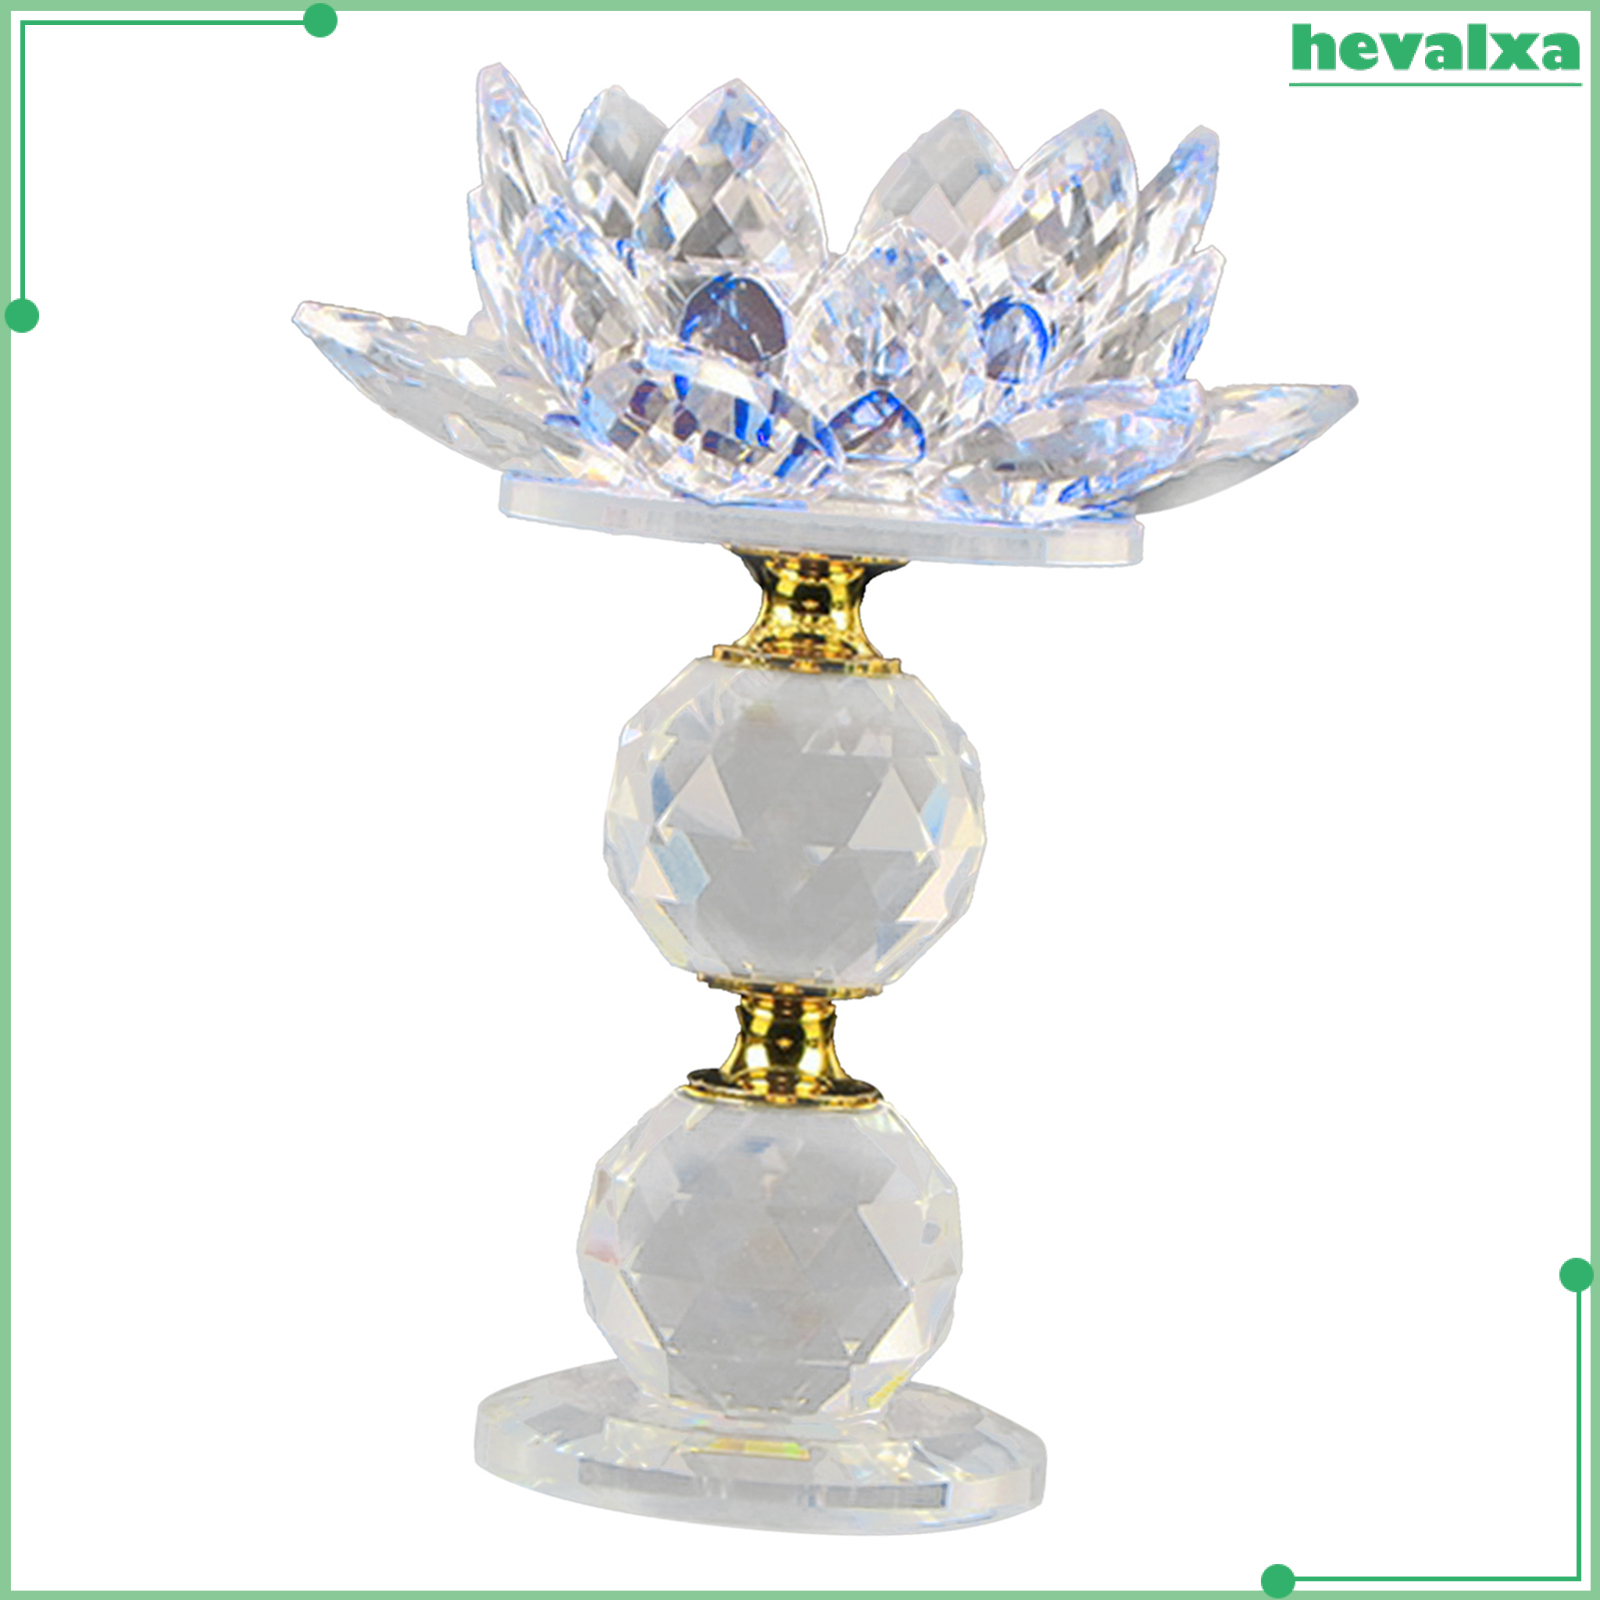 Chân đèn cầy hình hoa sen bằng pha lê phản chiếu lấp lánh trang trí bàn cà phê/đám cưới/tiệc tùng/tạo phong thủy